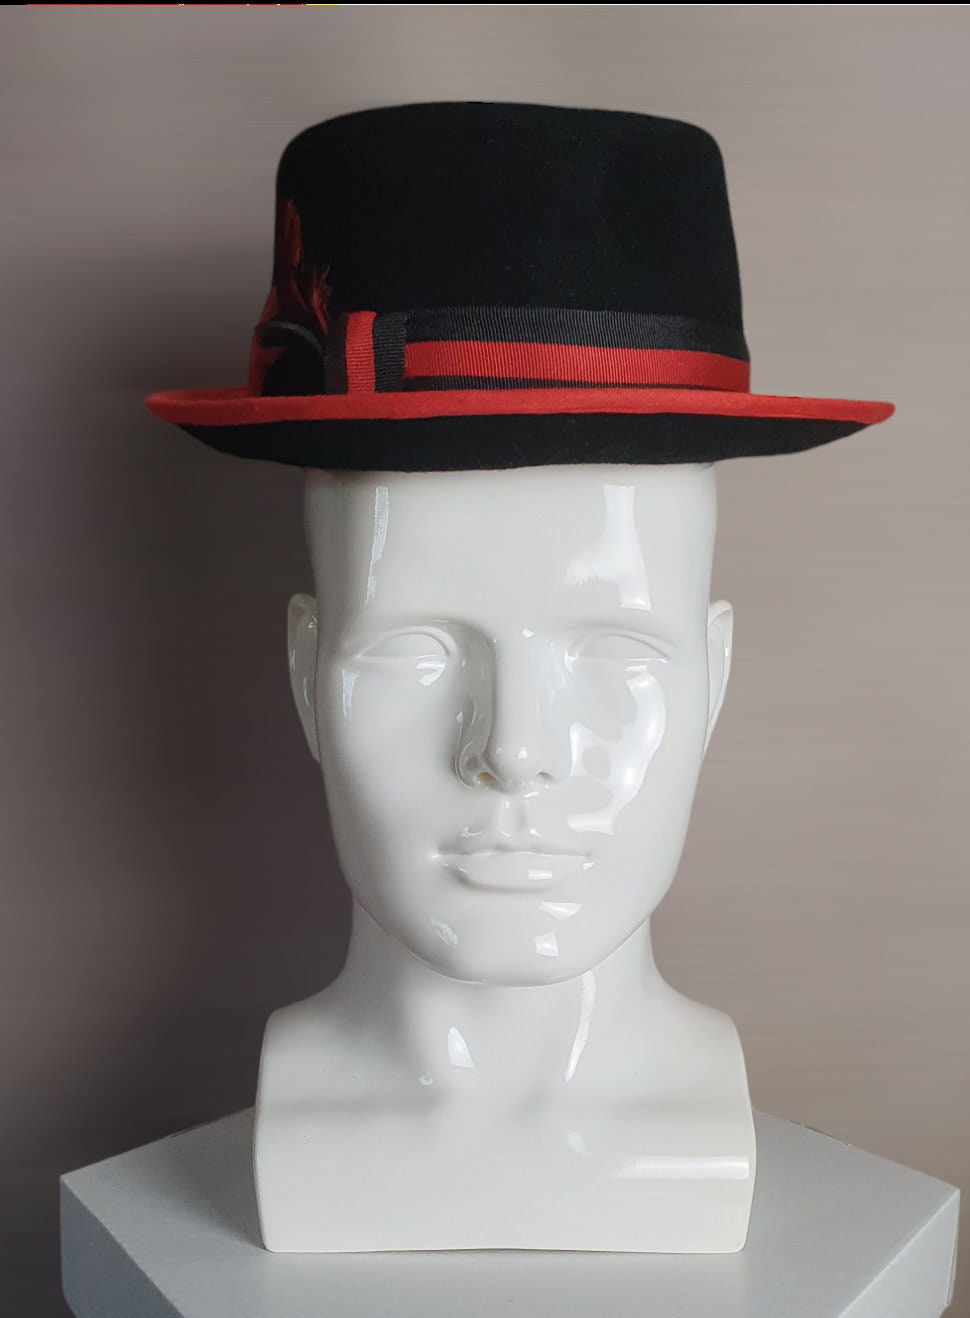 Trilby vilt hoed in zwart met rood, uniek en handgemaakt met hanenveren - geschikt voor het voorjaar en speciale gelegenheden - uniseks hoed